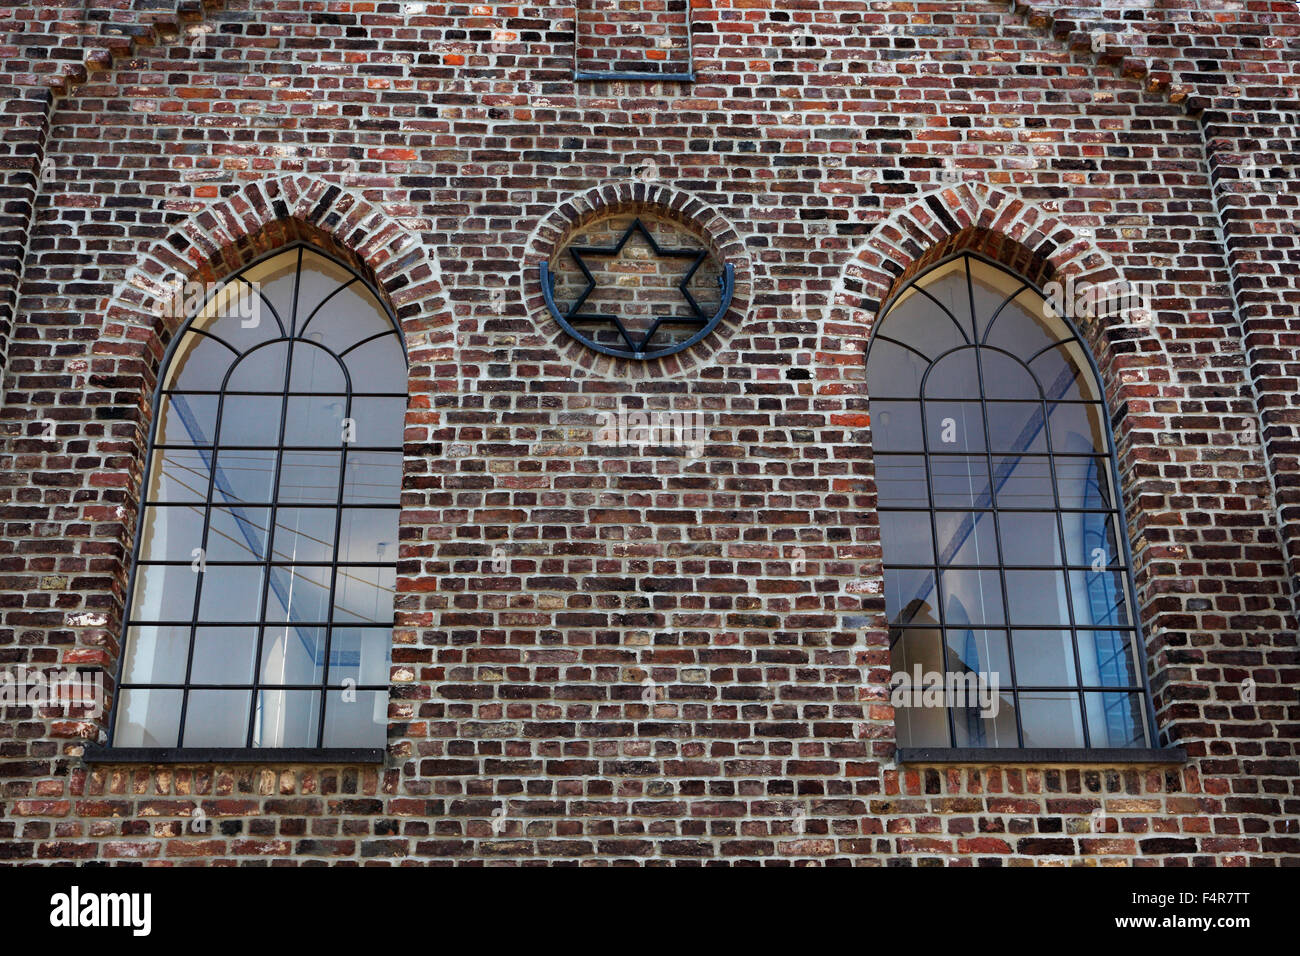 Backsteinfassade mit Davidstern, ehemalige juedische Synagoge in Grevenbroich-Huelchrath, Niederrhein, Nordrhein-Westfalen Stock Photo